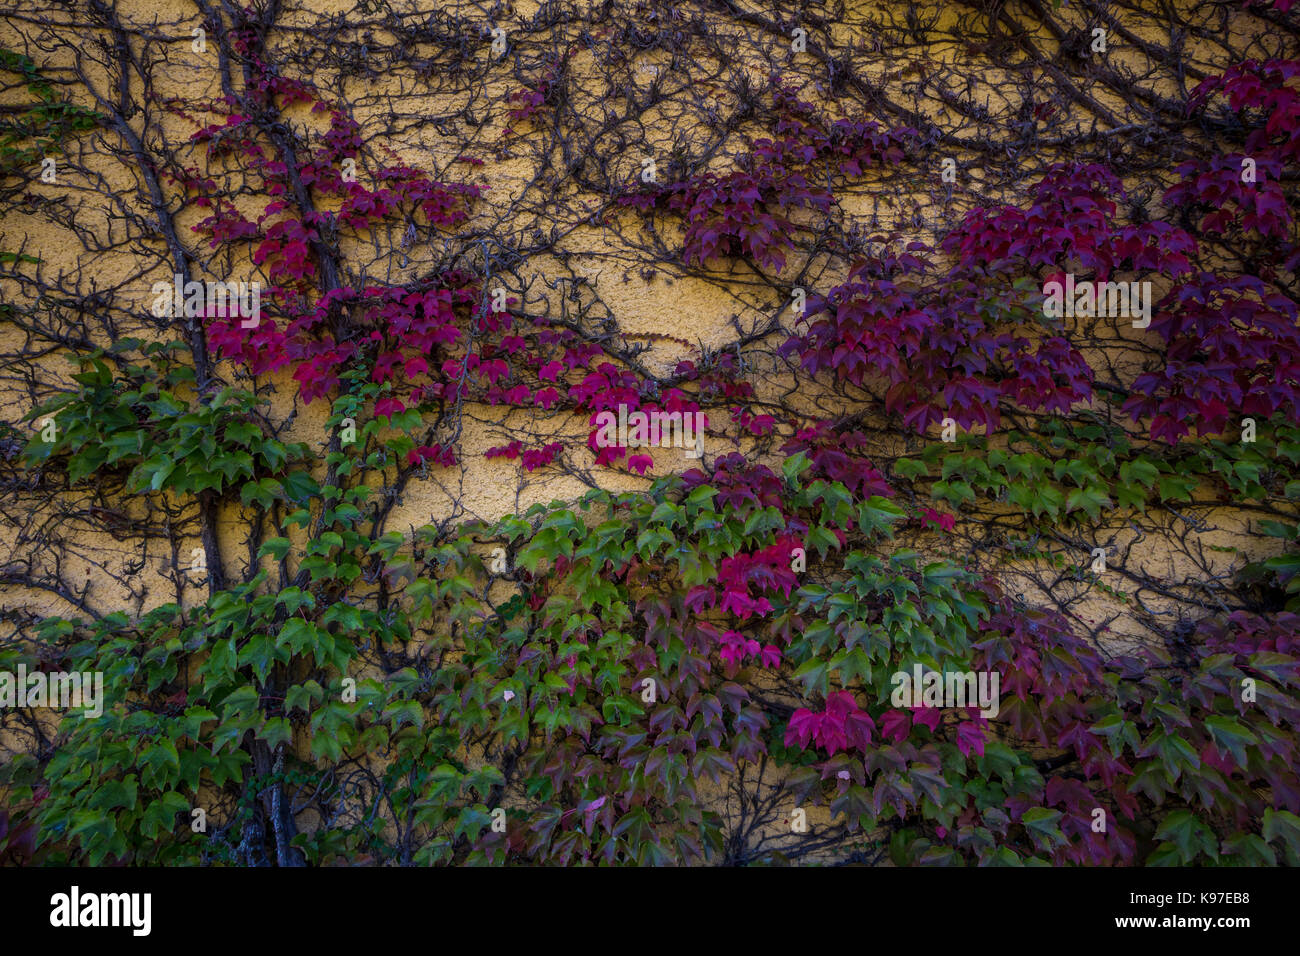 Mur couvert de lierre, Winery, jordan winery, healdsburg, Alexander Valley, sonoma county, Californie, États-Unis, Amérique du Nord Banque D'Images